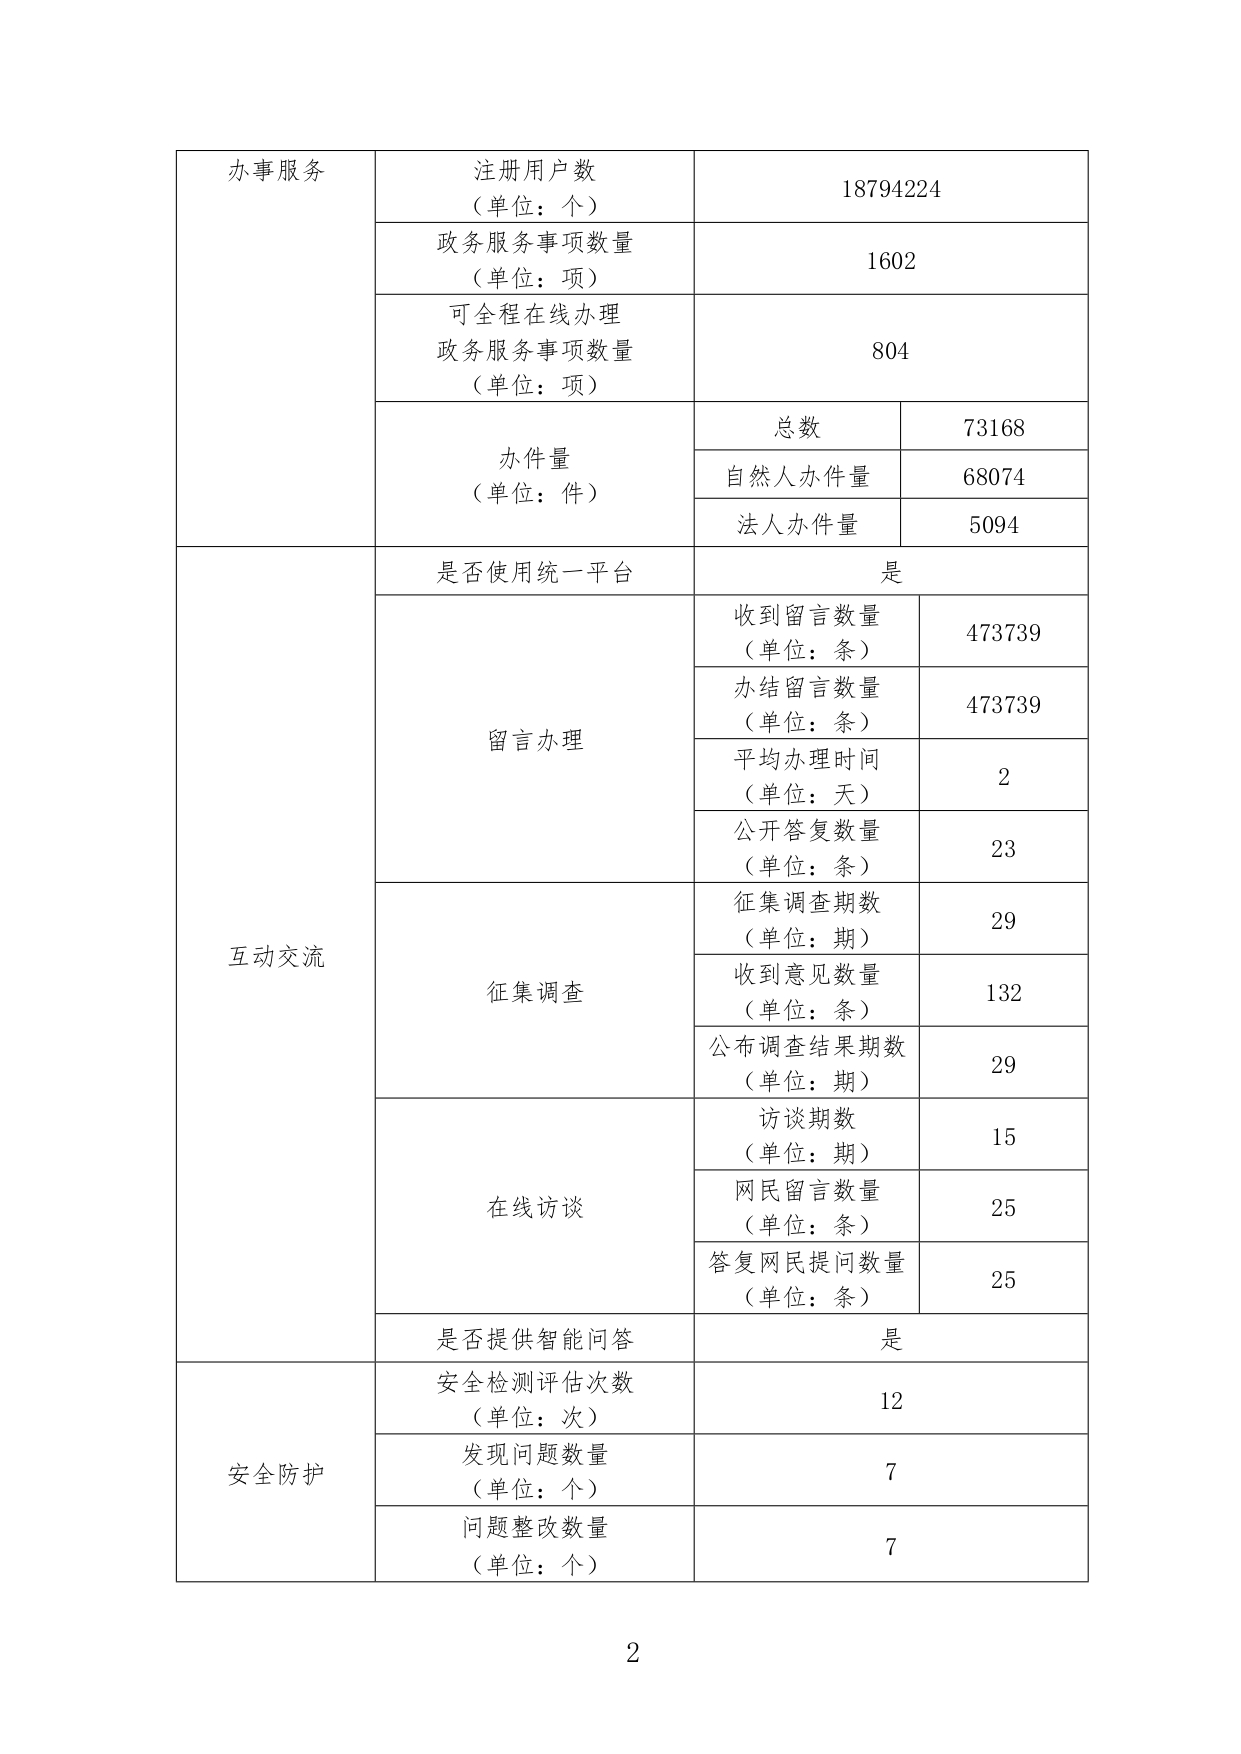 广州市海珠区人民政府网站工作2022年度报表_page-0002.jpg